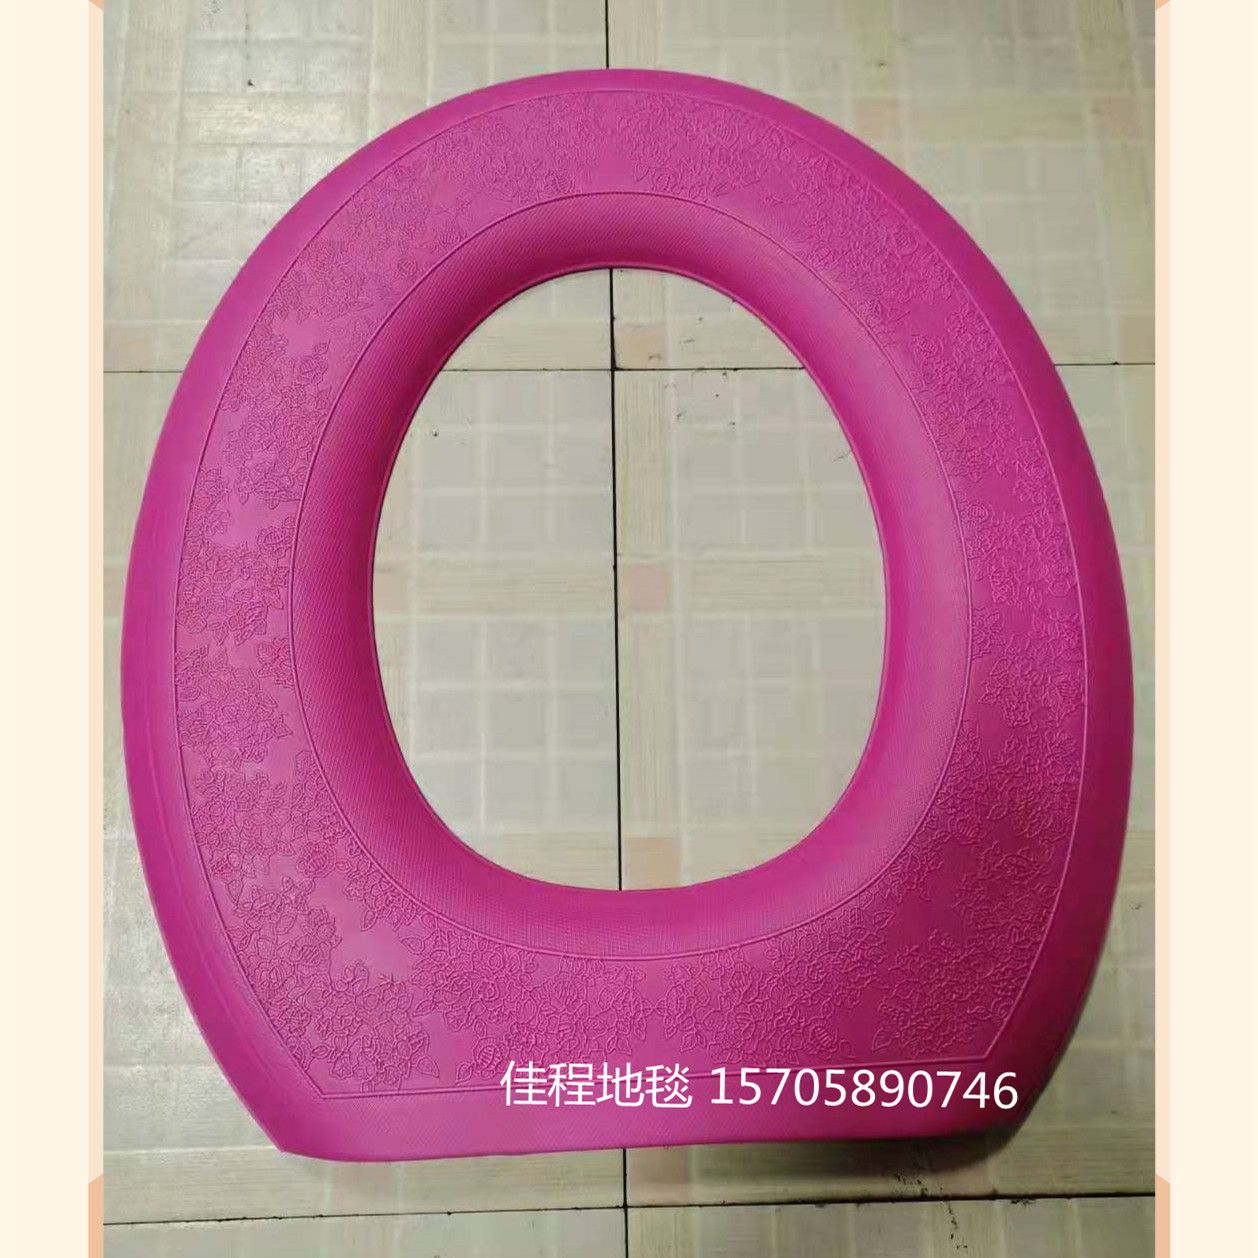 纯色EVA马桶垫 O型 防滑 保暖 EVA泡沫马桶垫 适用于春夏秋冬季节 外贸款详情图5